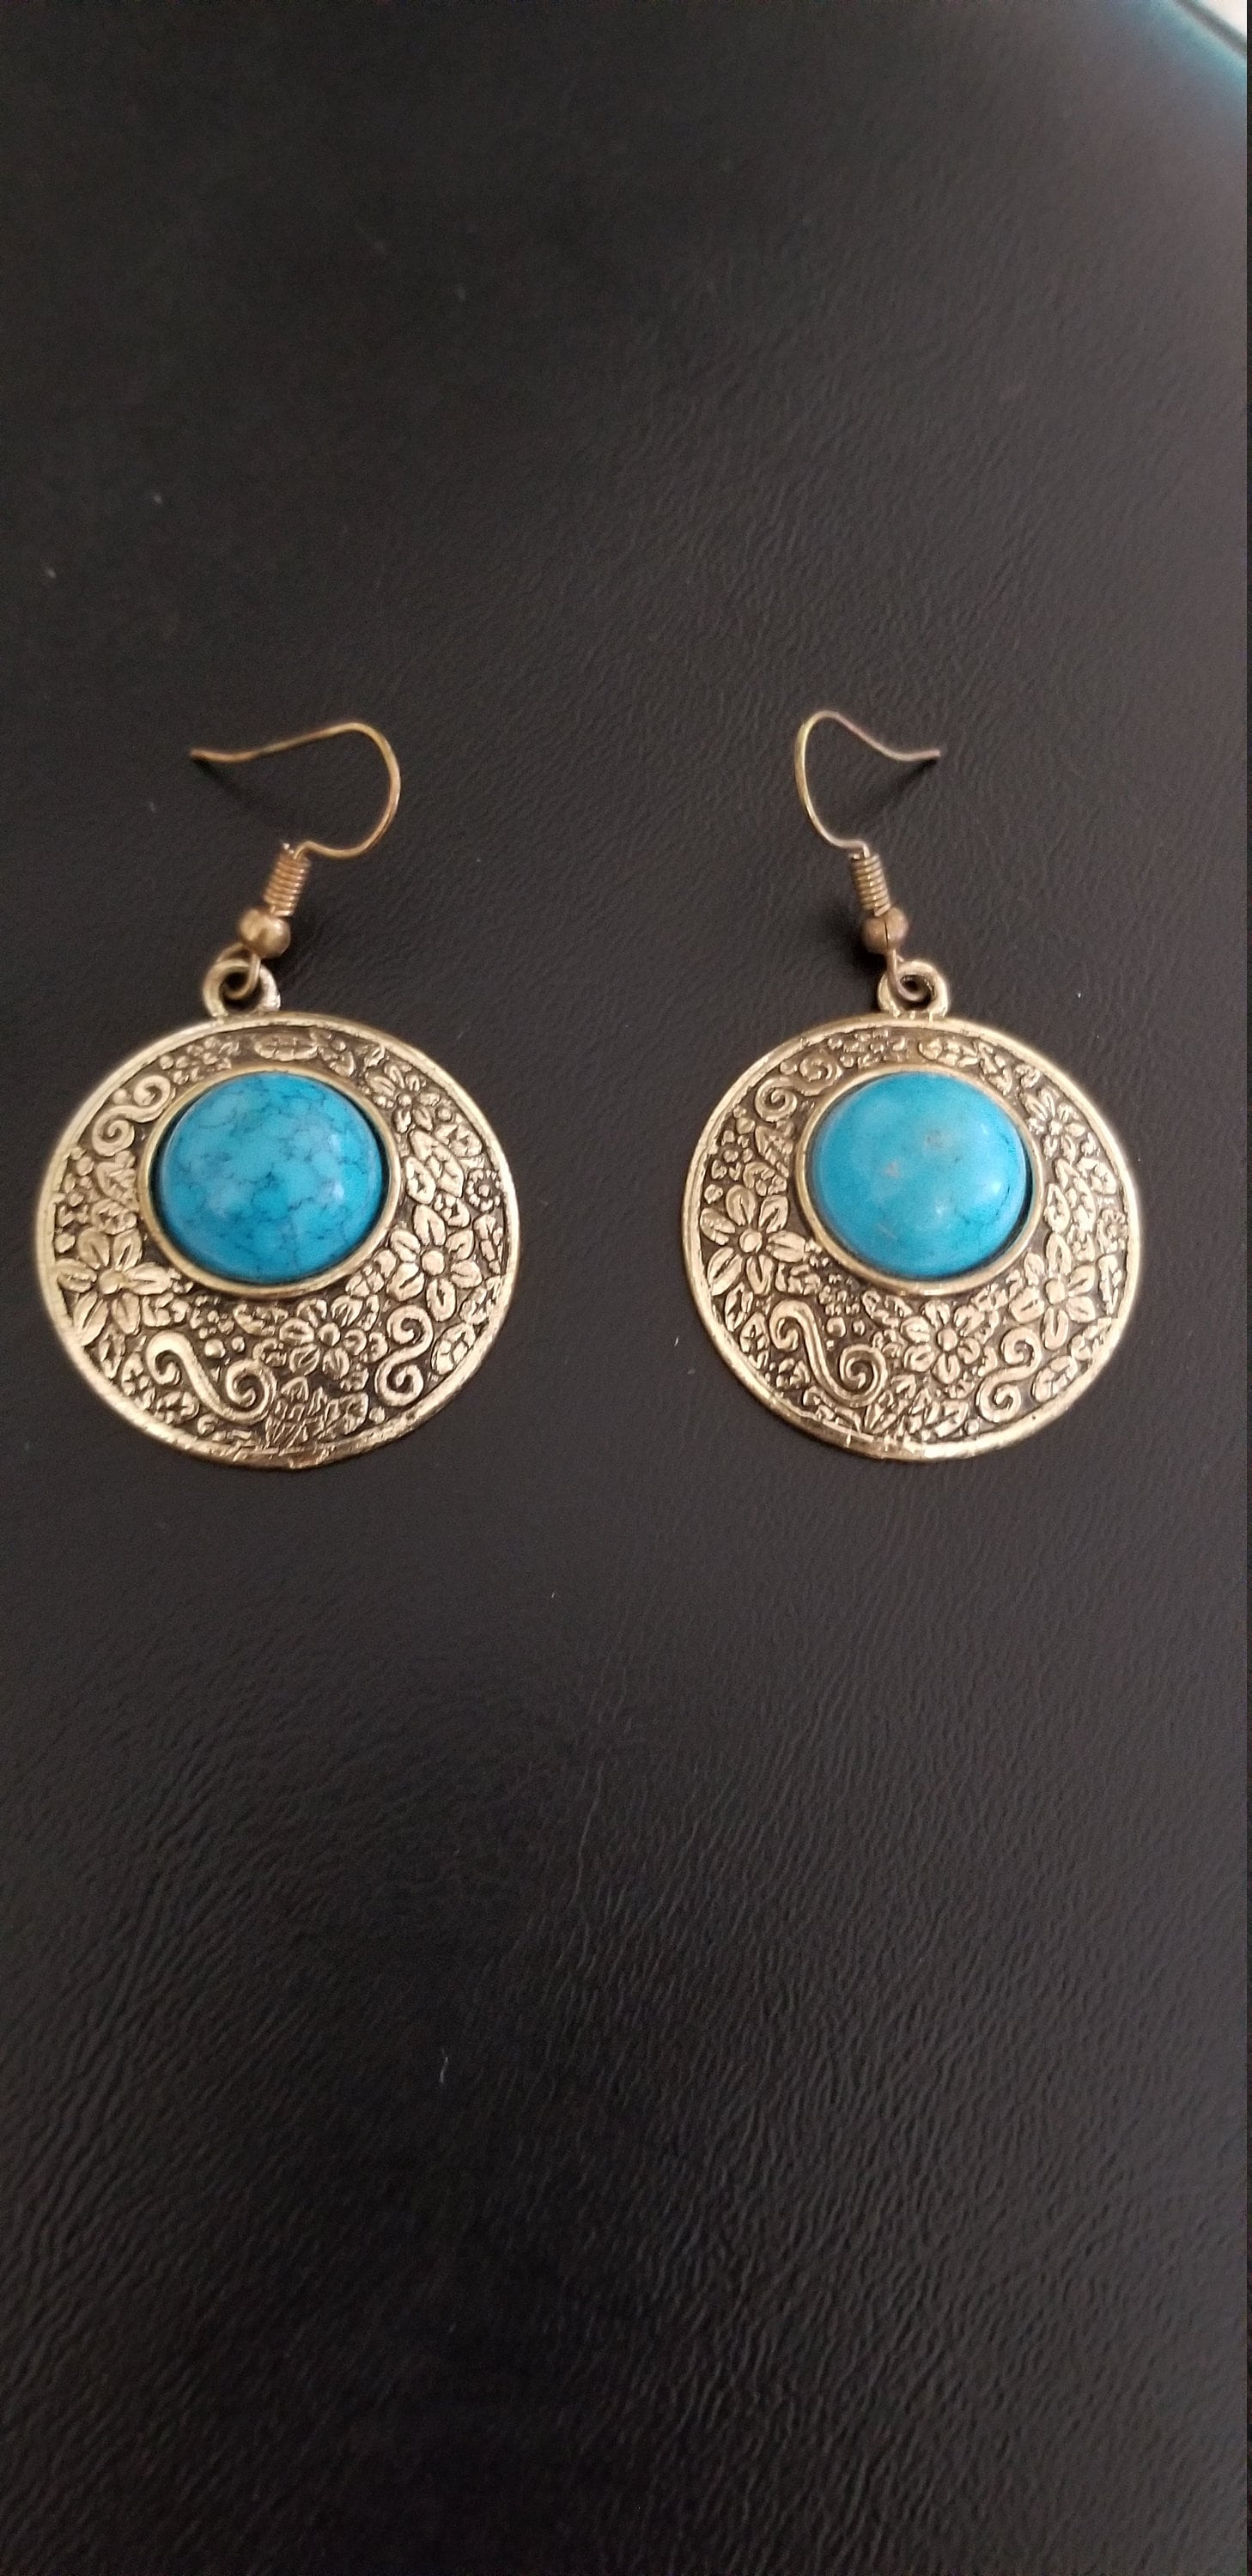 Tibetan Jewelry - Antique finish - Turquoise stone